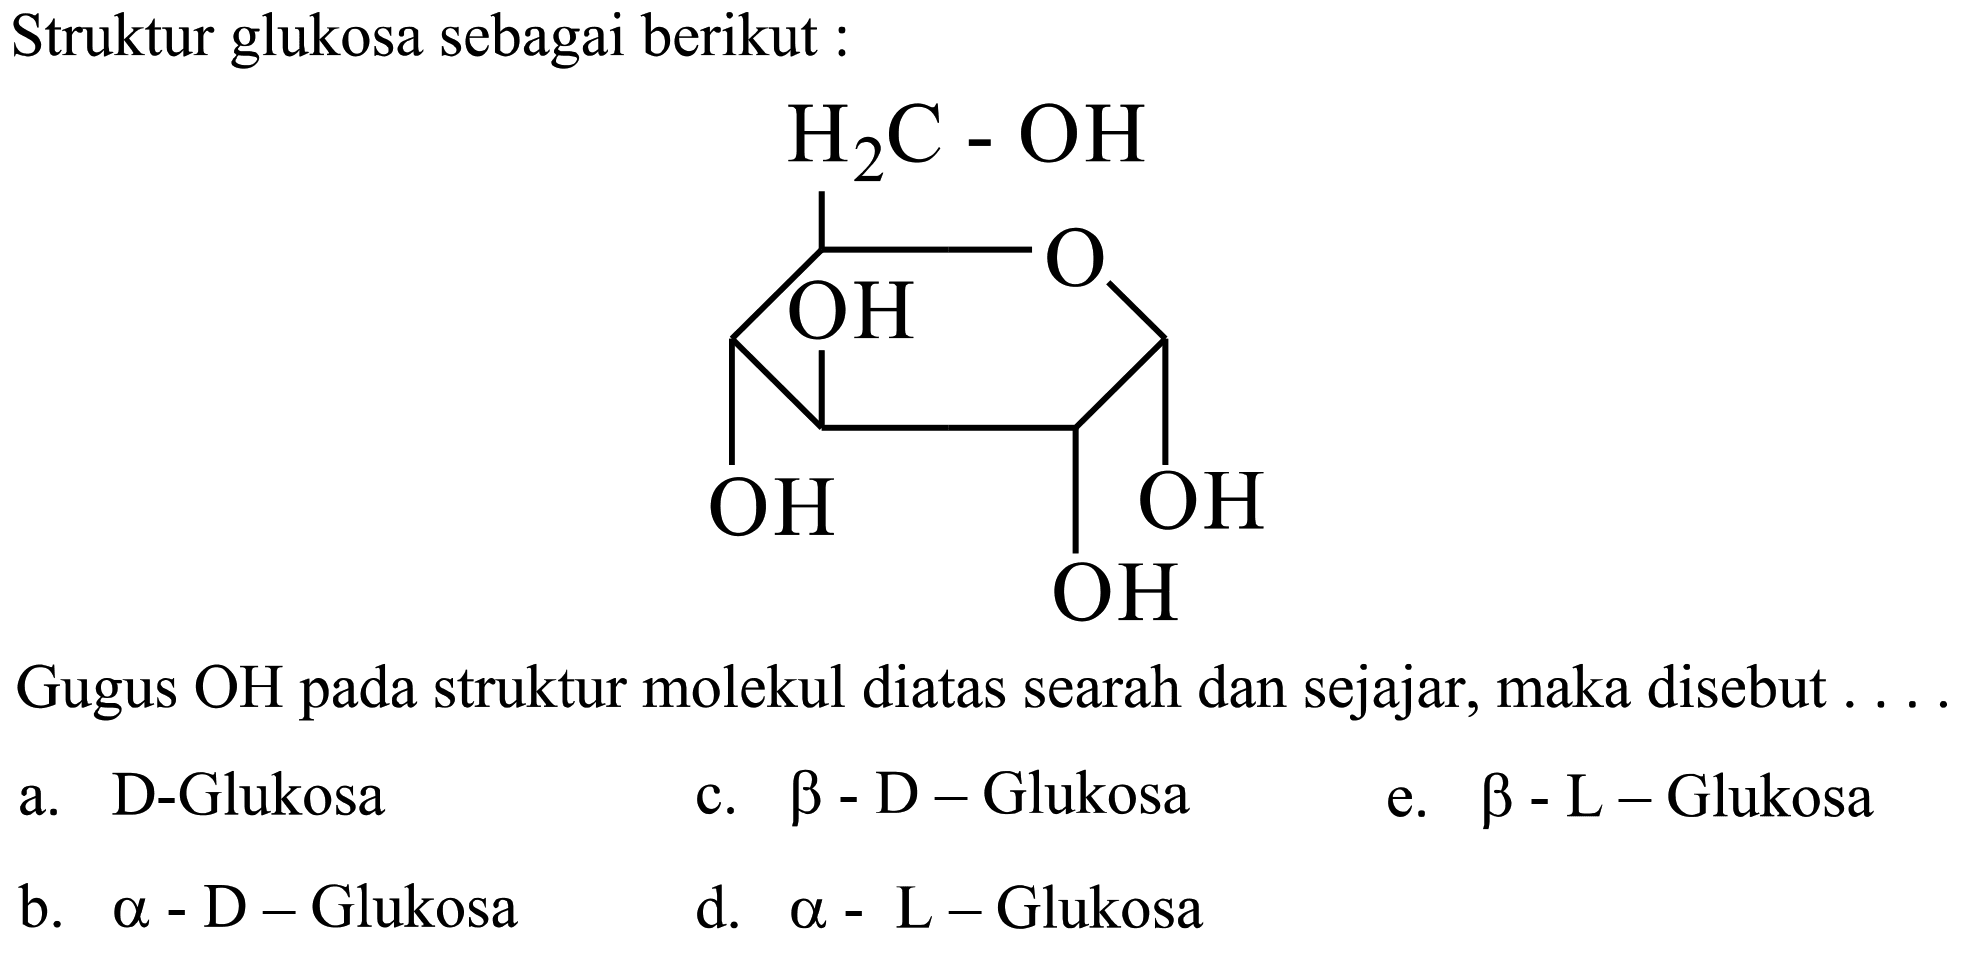 Struktur glukosa sebagai berikut :
OCC1OC(CO)C(O)C(O)C1O
Gugus OH pada struktur molekul diatas searah dan sejajar, maka disebut .
a. D-Glukosa
c.  b-D-  Glukosa
e.  b-L-  Glukosa
b.  a-D-  Glukosa
d.  a-L-  Glukosa